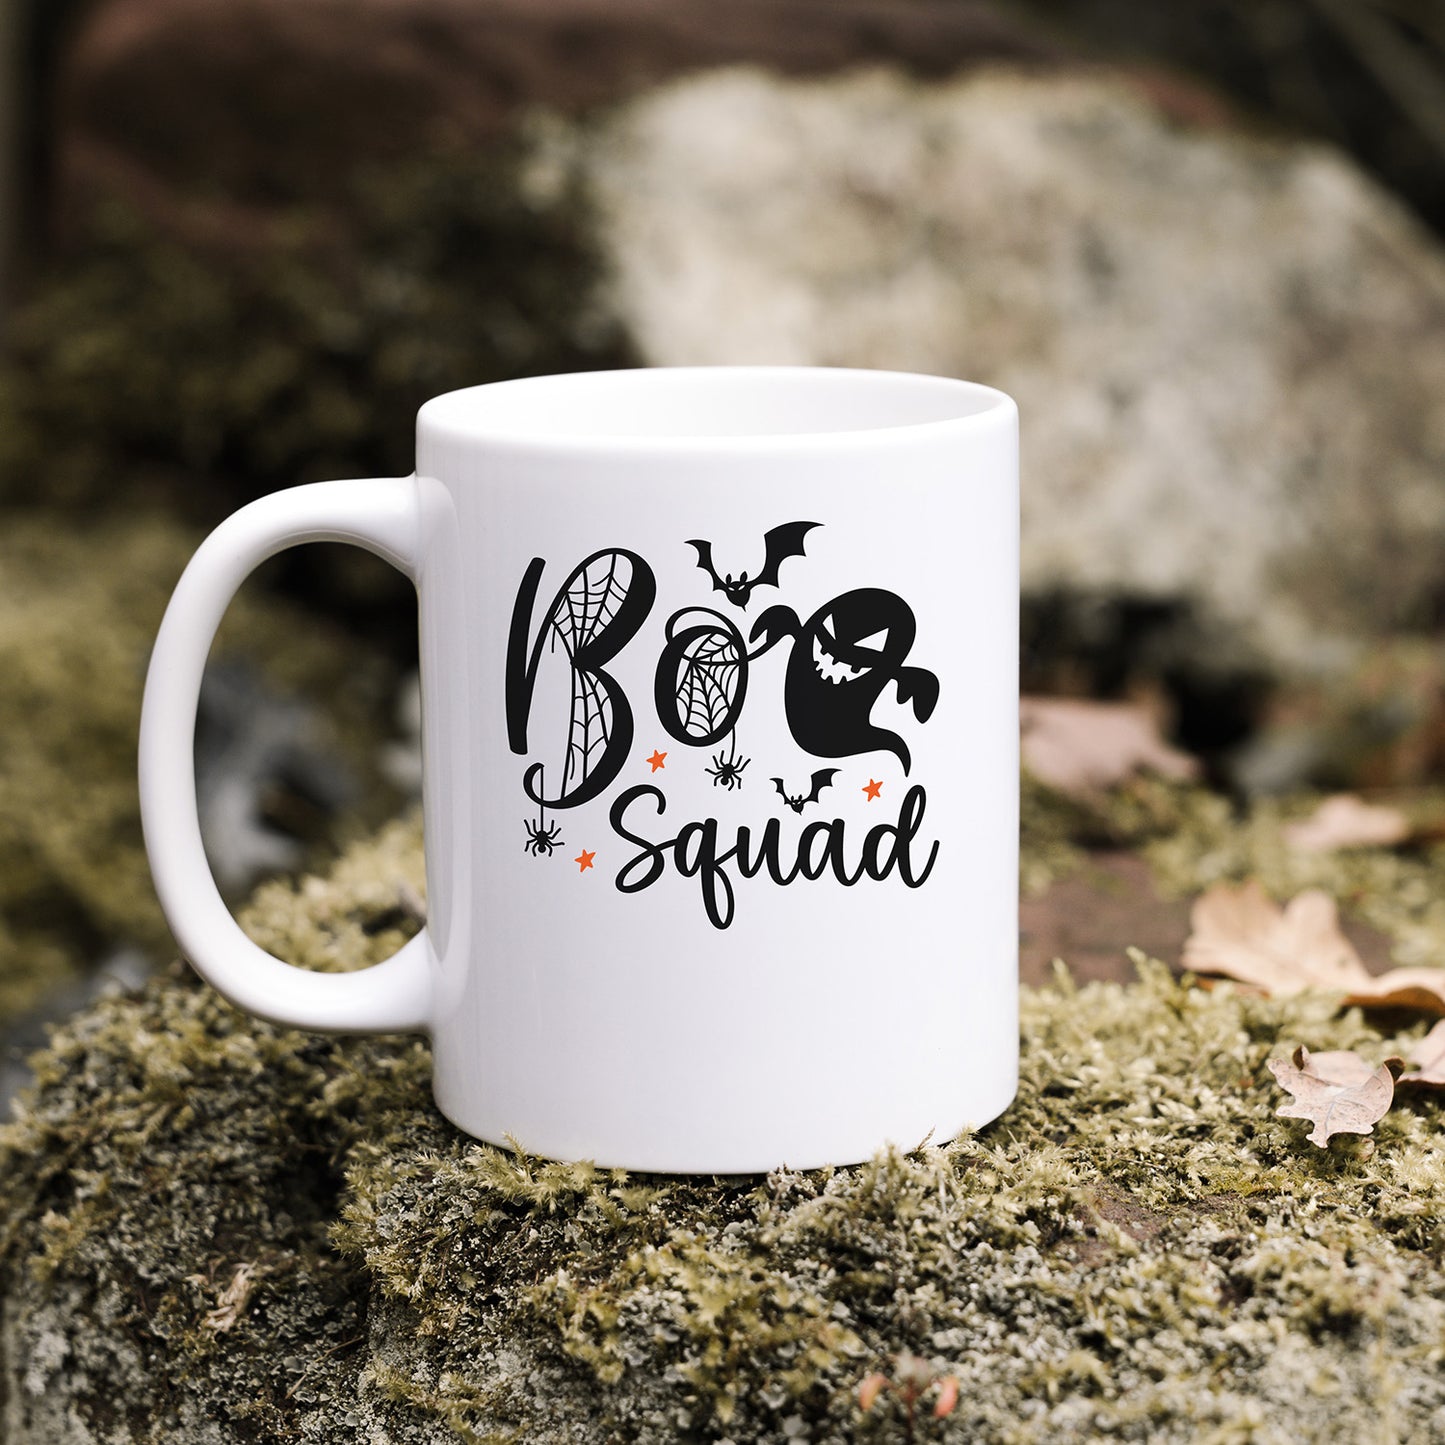 "Boo Squad" Graphic